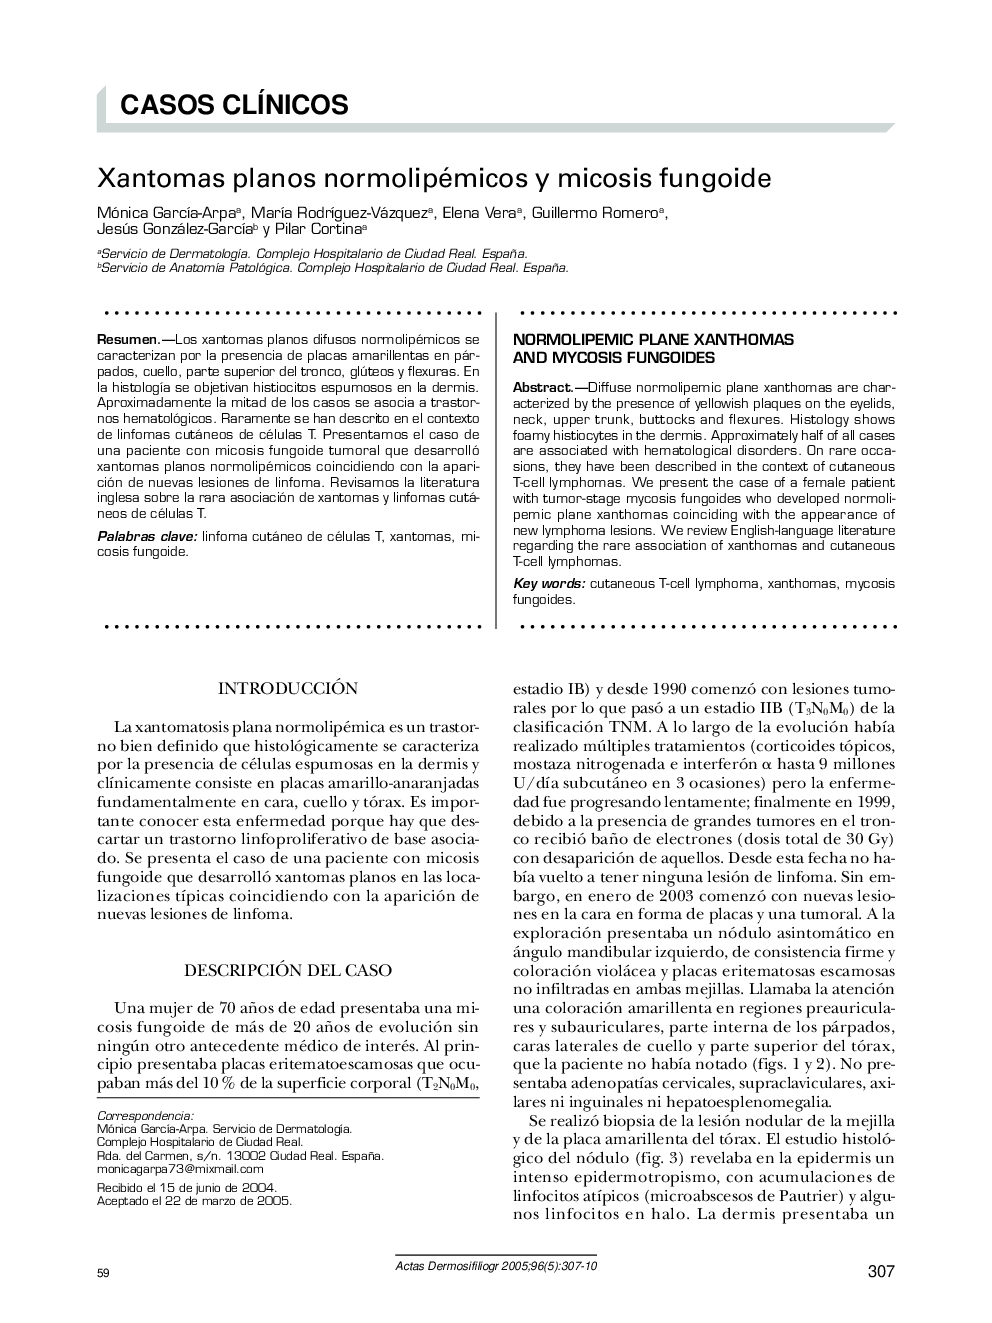 Xantomas planos normolipémicos y micosis fungoide